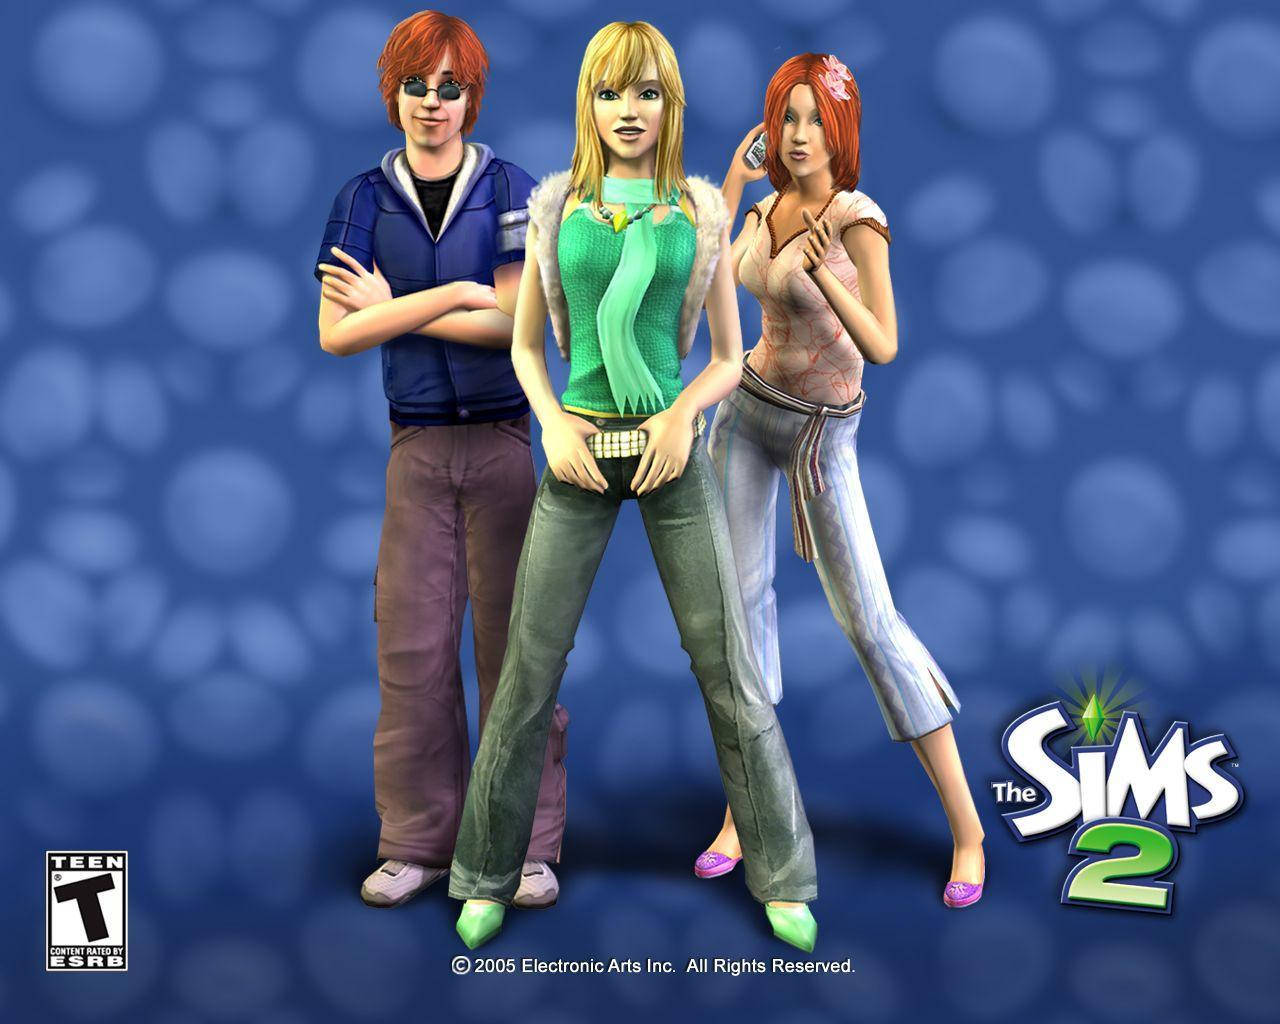 Weißepunkte Auf Blau Die Sims Wallpaper